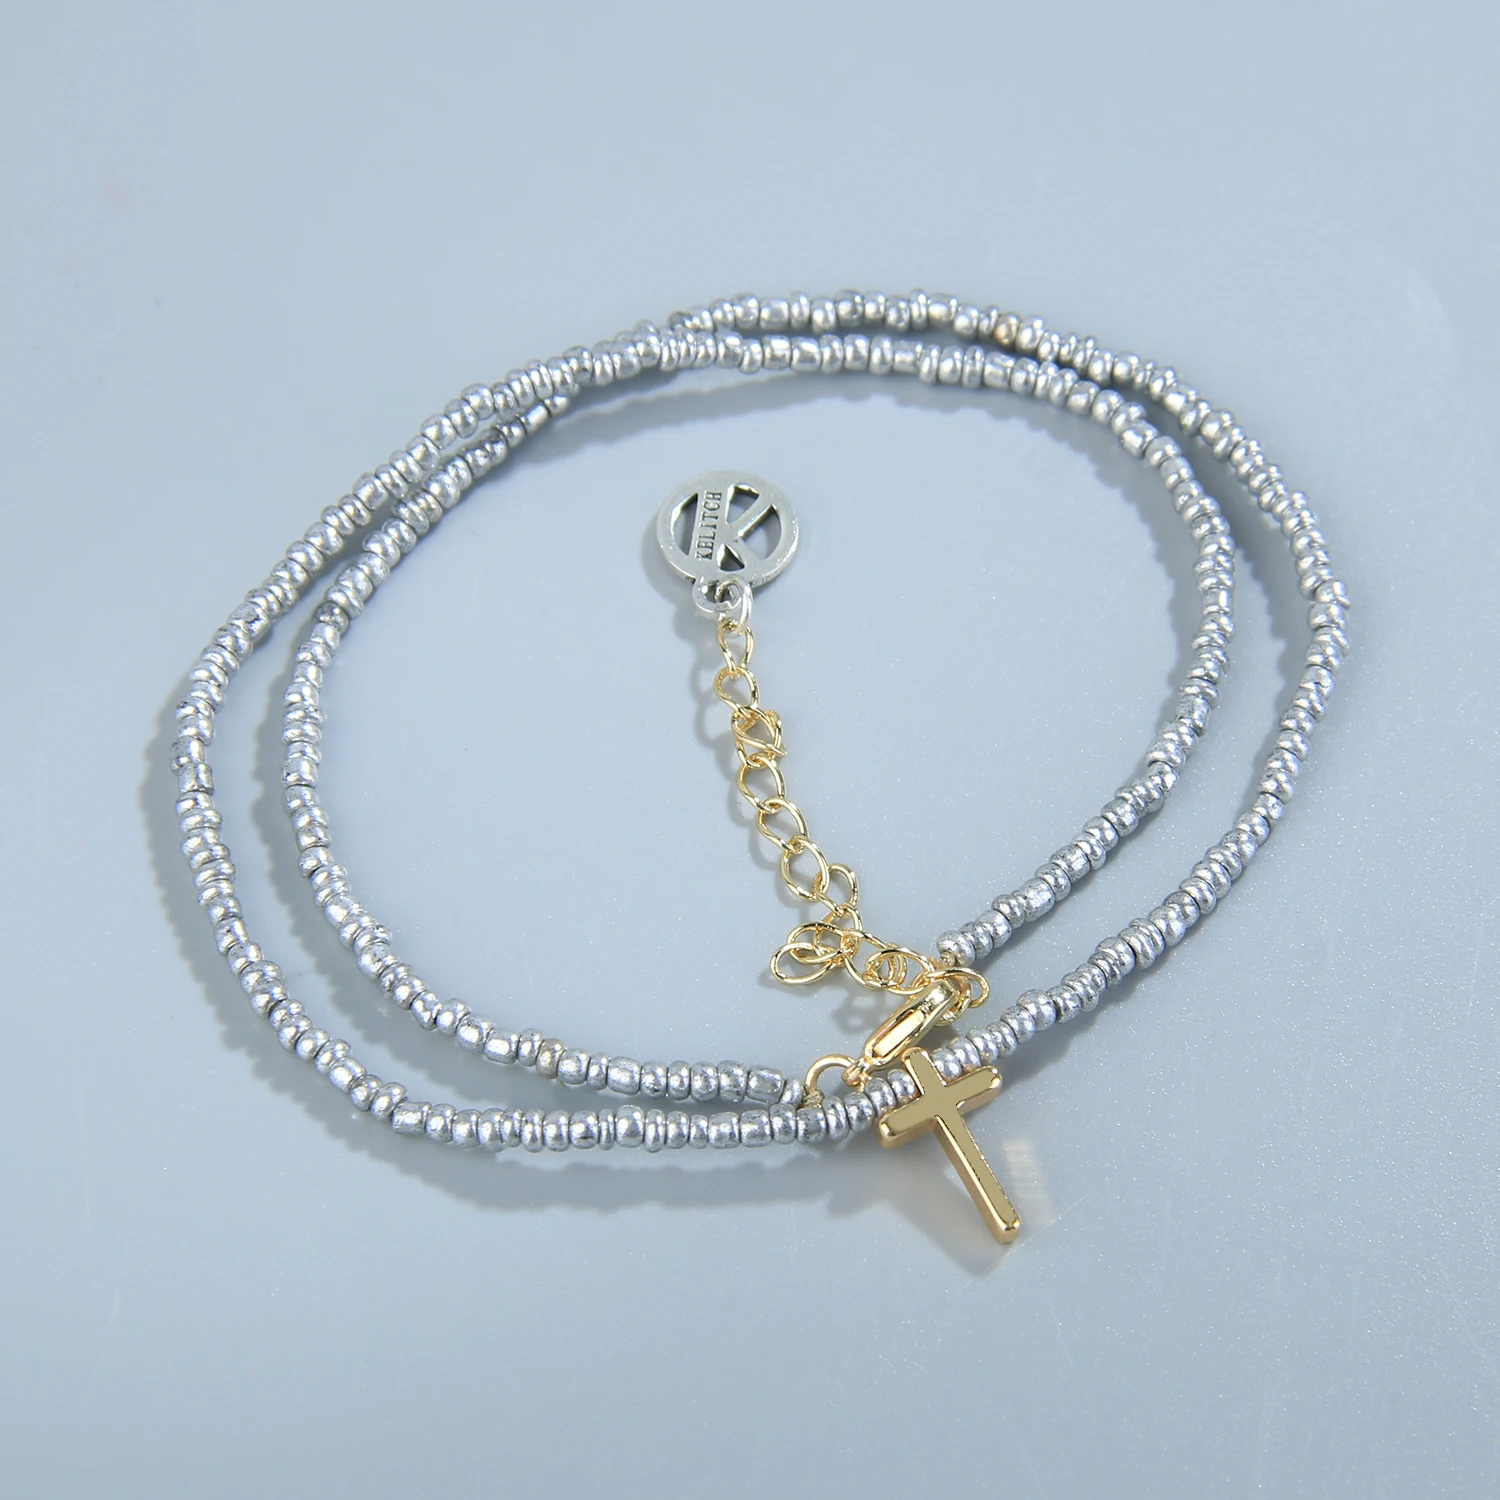 KELITCH Mujeres Miyuki Cruz Colgante de Collares de Perlas de Cristal Collar de la Amistad de la Joyería Gargantillas hechas a Mano Joyería al por mayor - 3